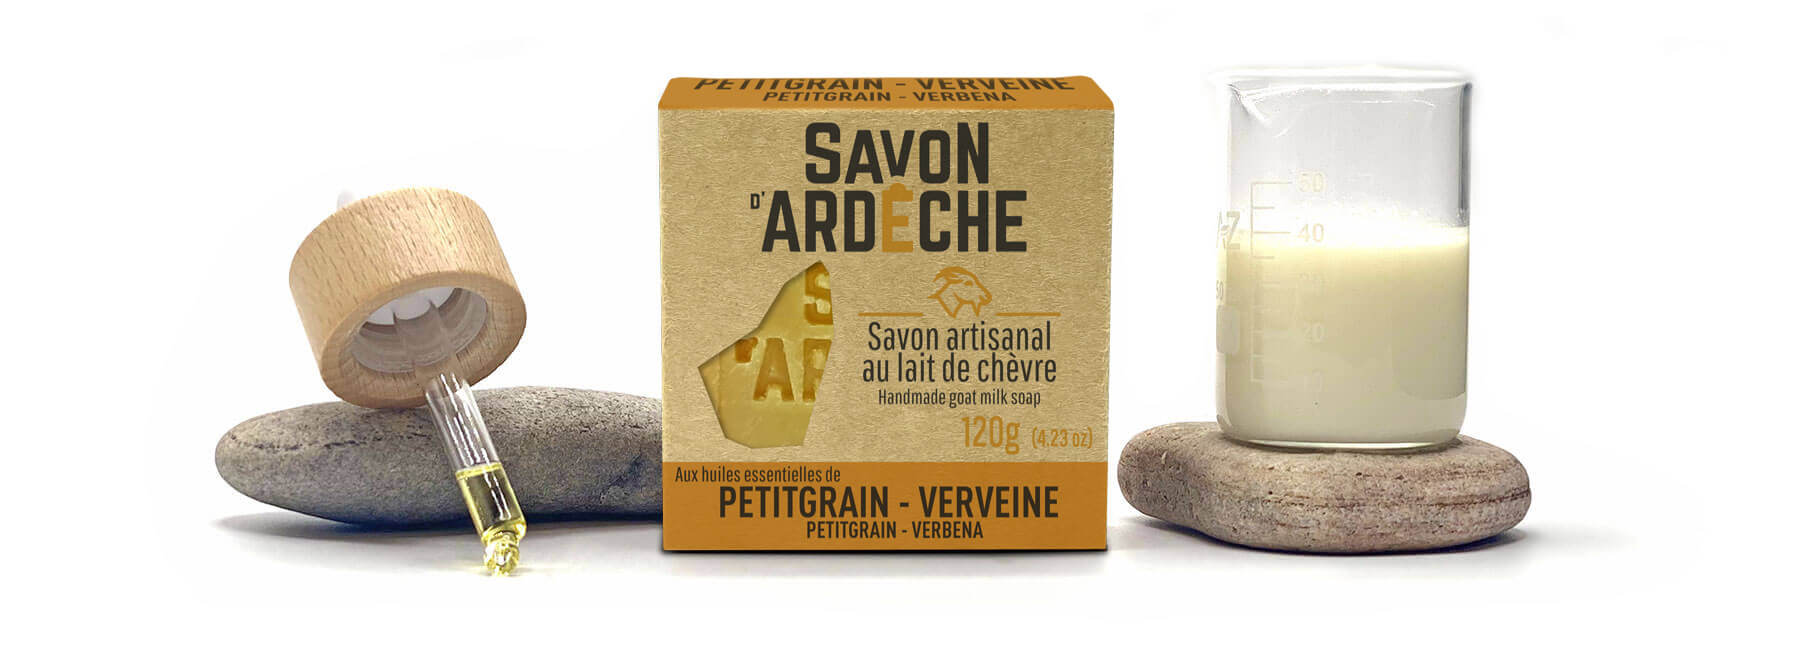 Le Savon d'Ardèche composé de lait de chèvre et d'huiles essentielles de Petitgrain